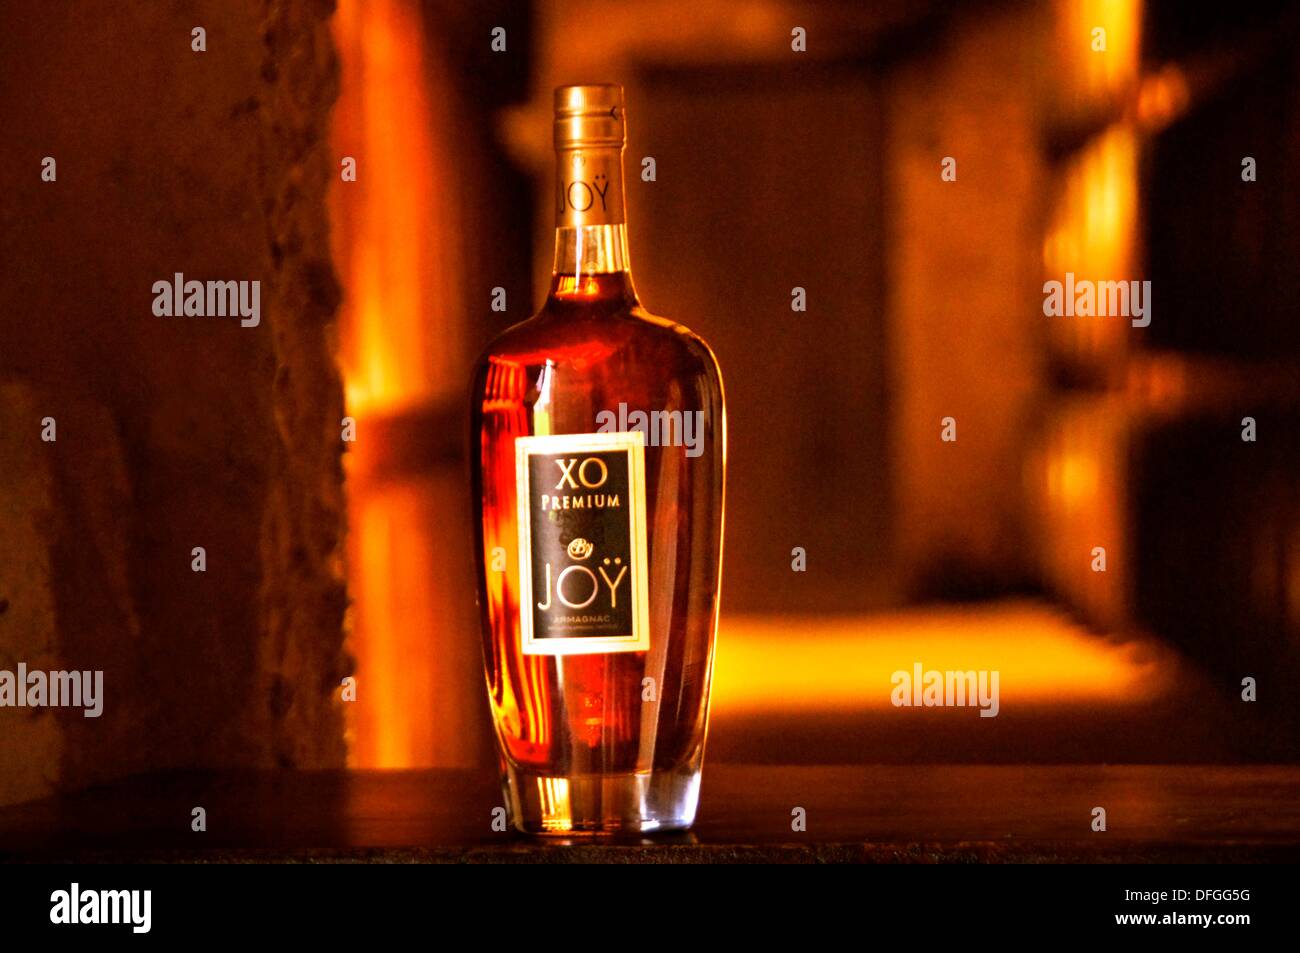 La célèbre bouteille d'Armagnac XO Premium, Domaine de Joÿ vins et armagnac estate, à Panjas, Gers, Midi-Pyrénées, France Banque D'Images